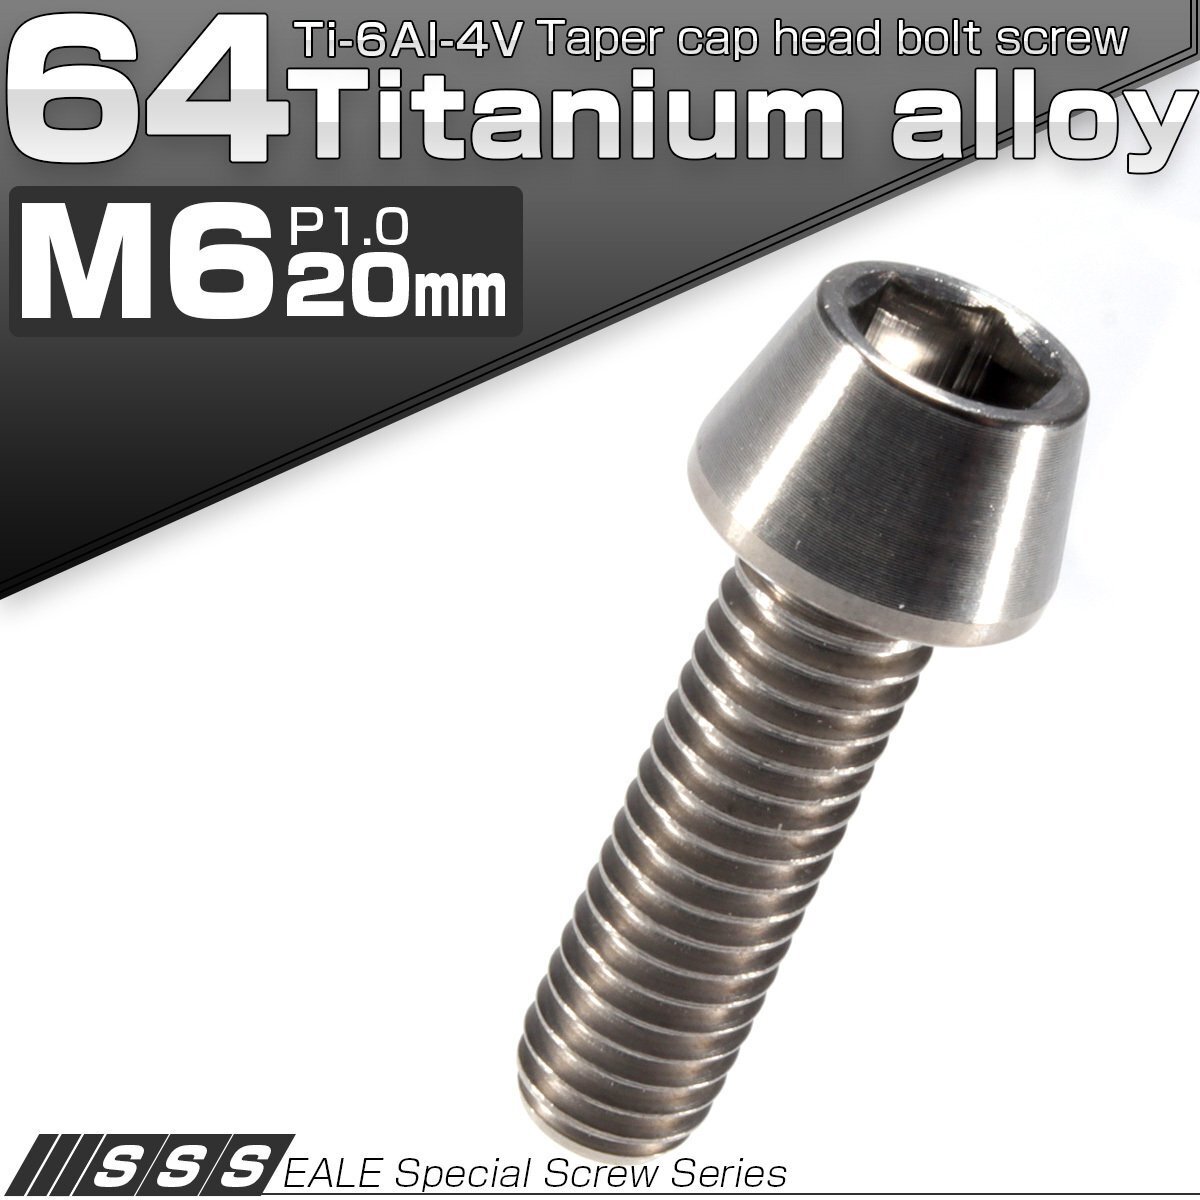 64チタン M6×20mm P1.0 テーパー キャップボルト シルバー素地色 六角穴付きボルト Ti6Al-4V チタンボルト JA104_画像1